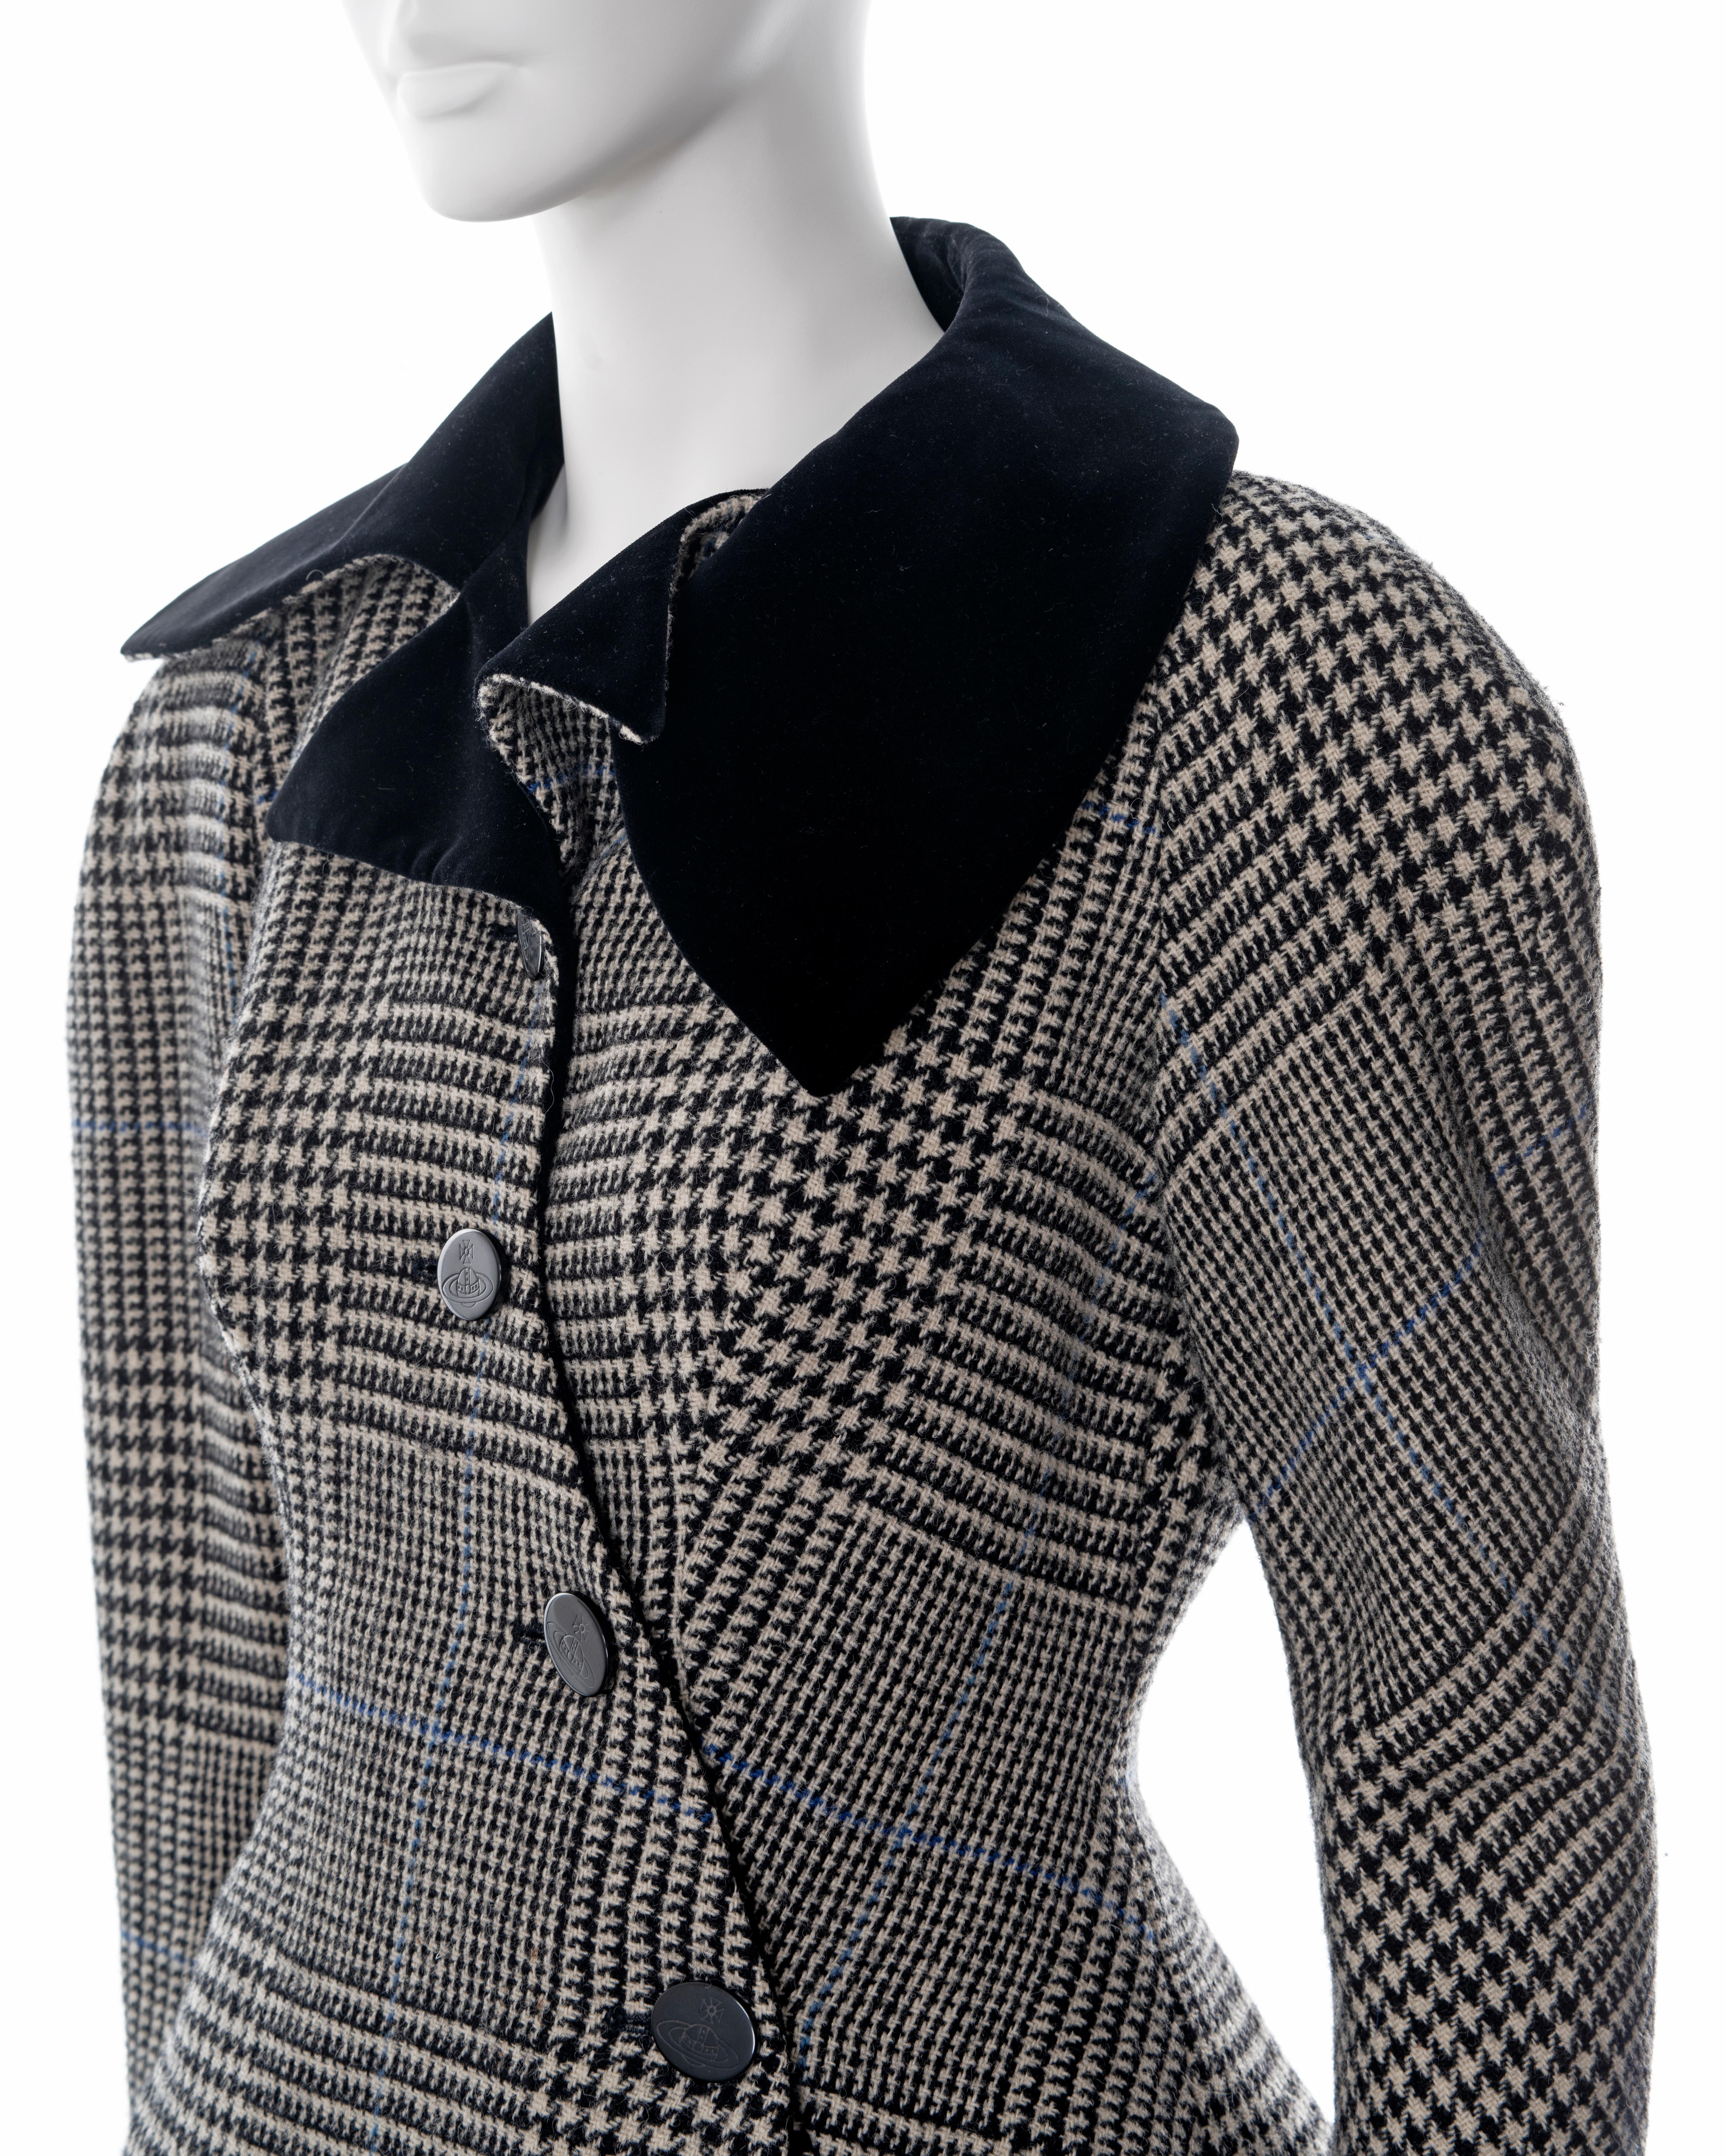 Vivienne Westwood grey houndstooth check tweed skirt suit, fw 1996 6